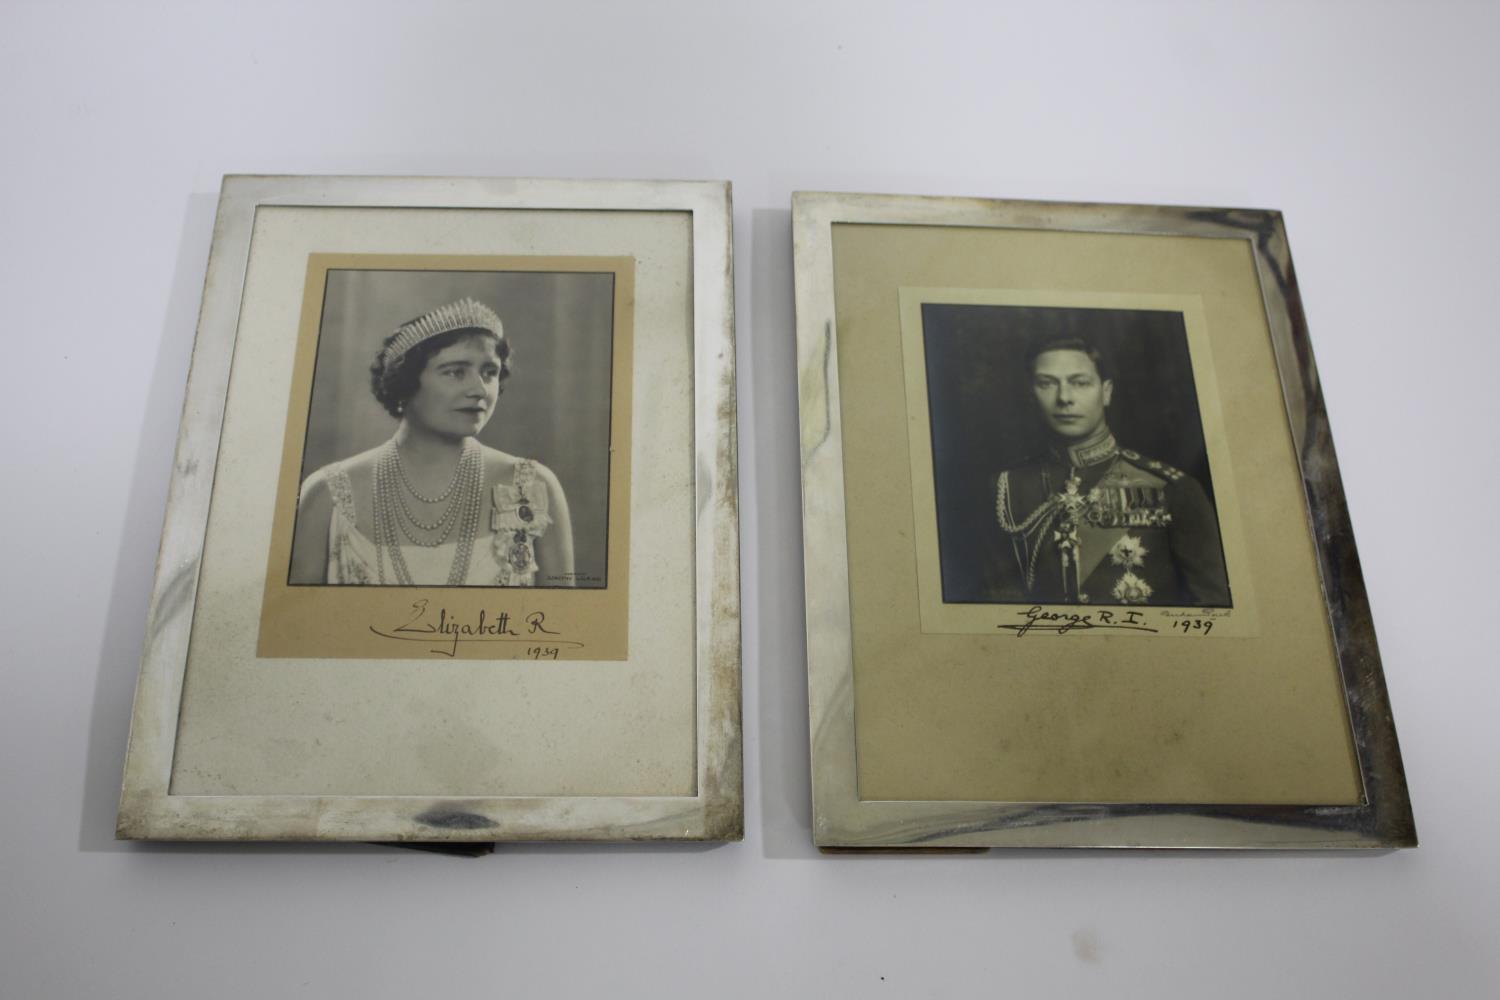 KING GEORGE VI & QUEEN ELIZABETH - SIGNED PHOTOGRAPHS including a photograph of King George VI,